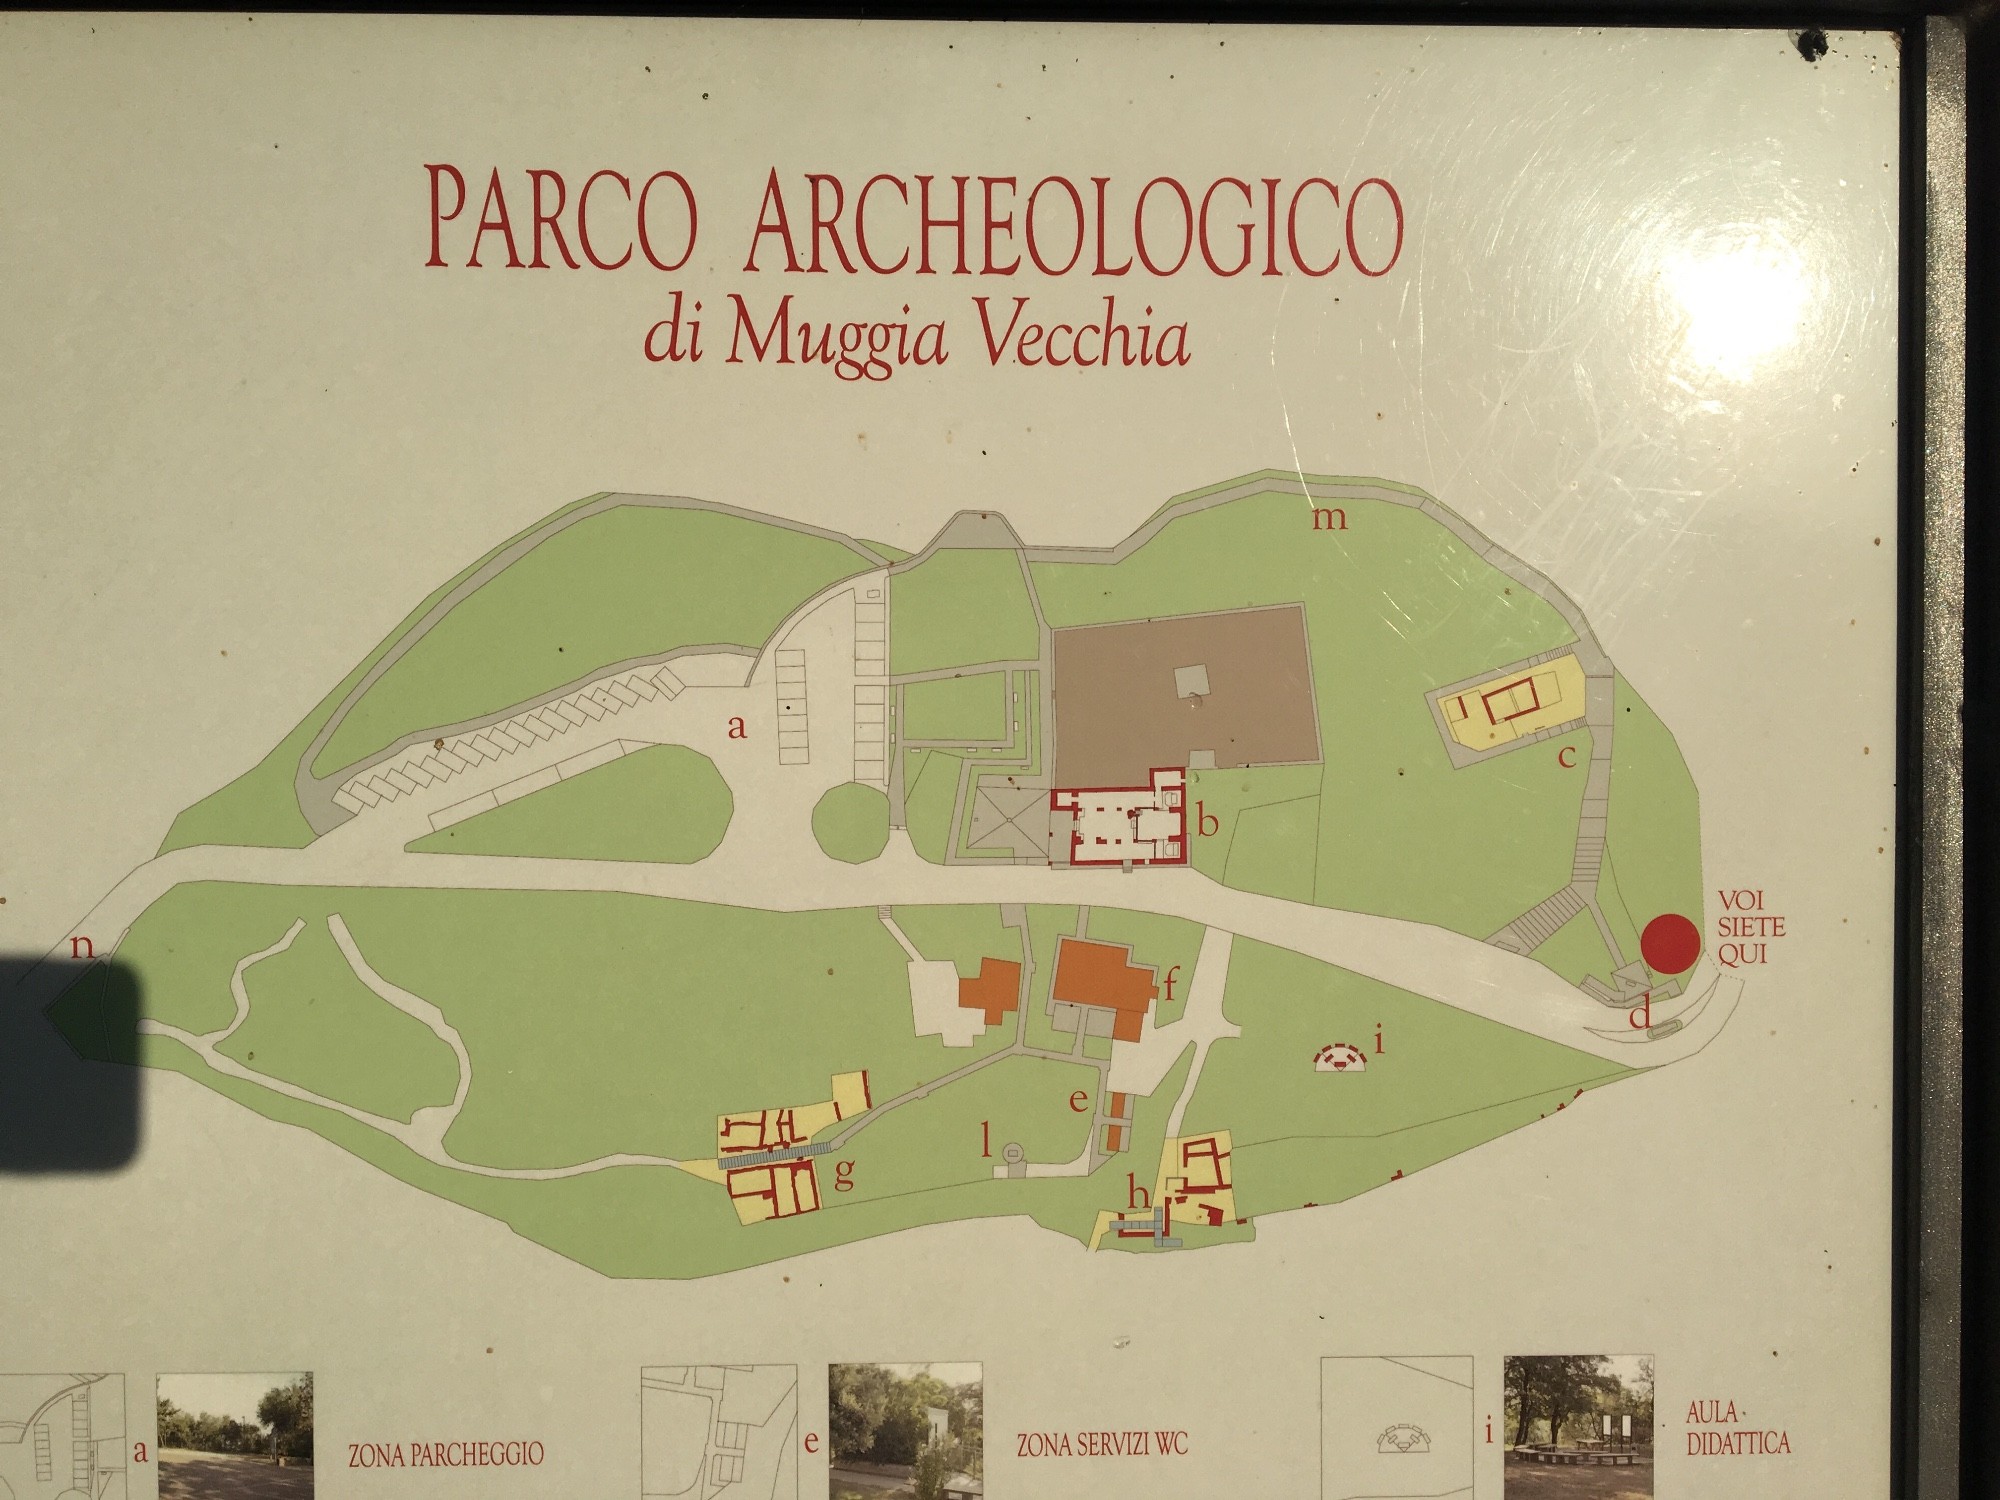 Parco archeologico di Muggia Vecchia, Италия